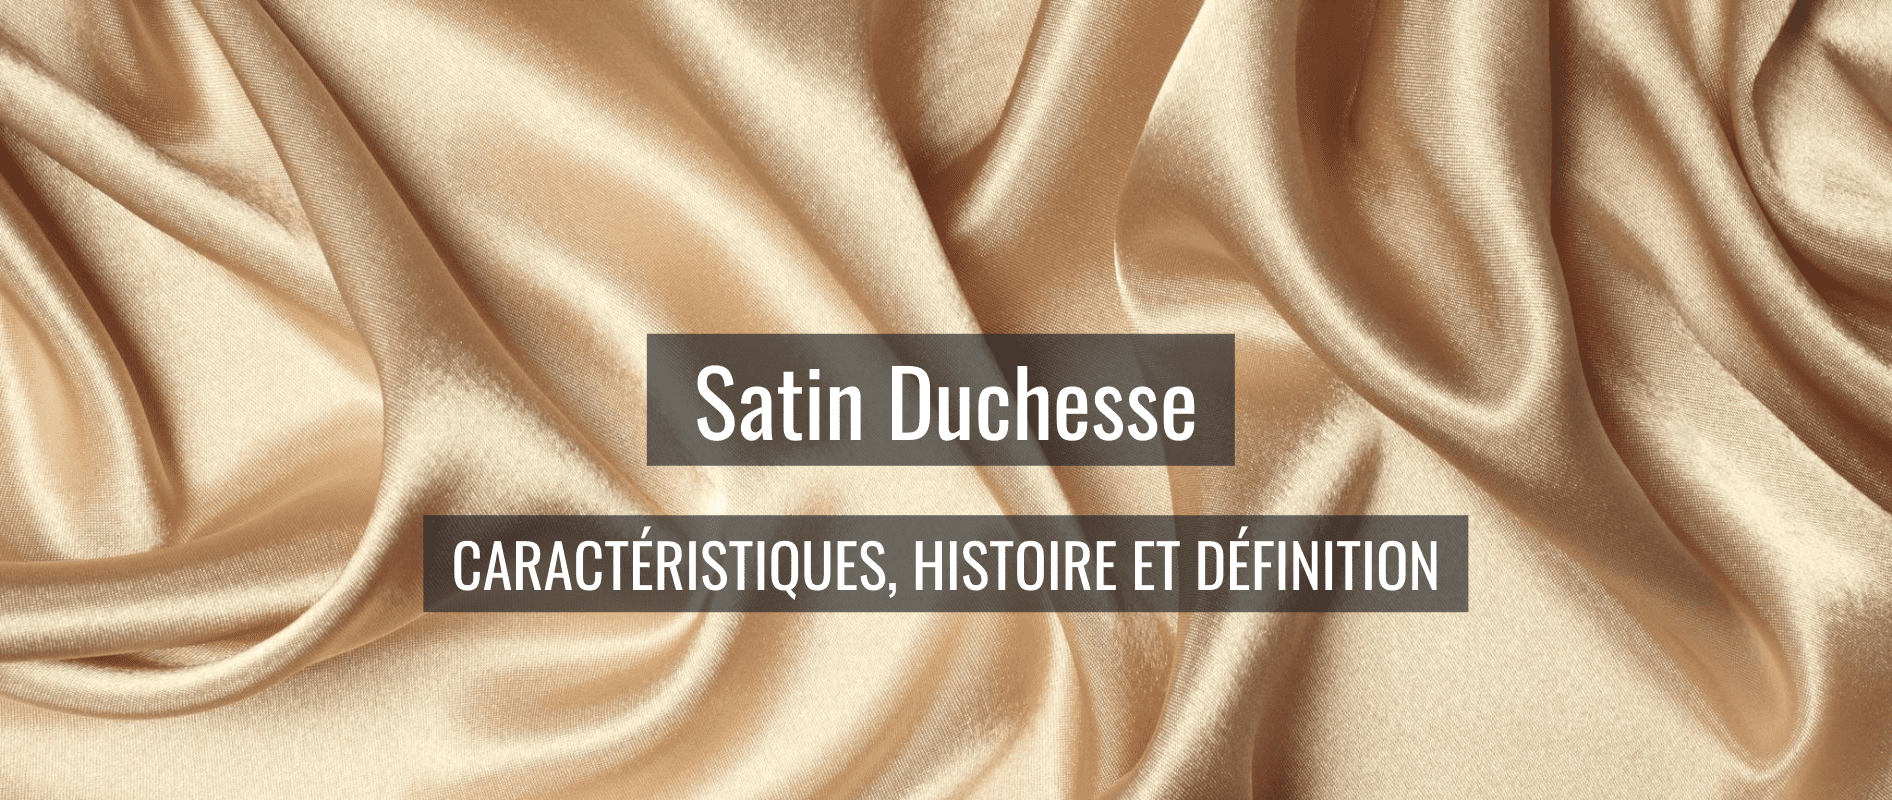 Satin duchesse caractéristiques, histoire et définition.